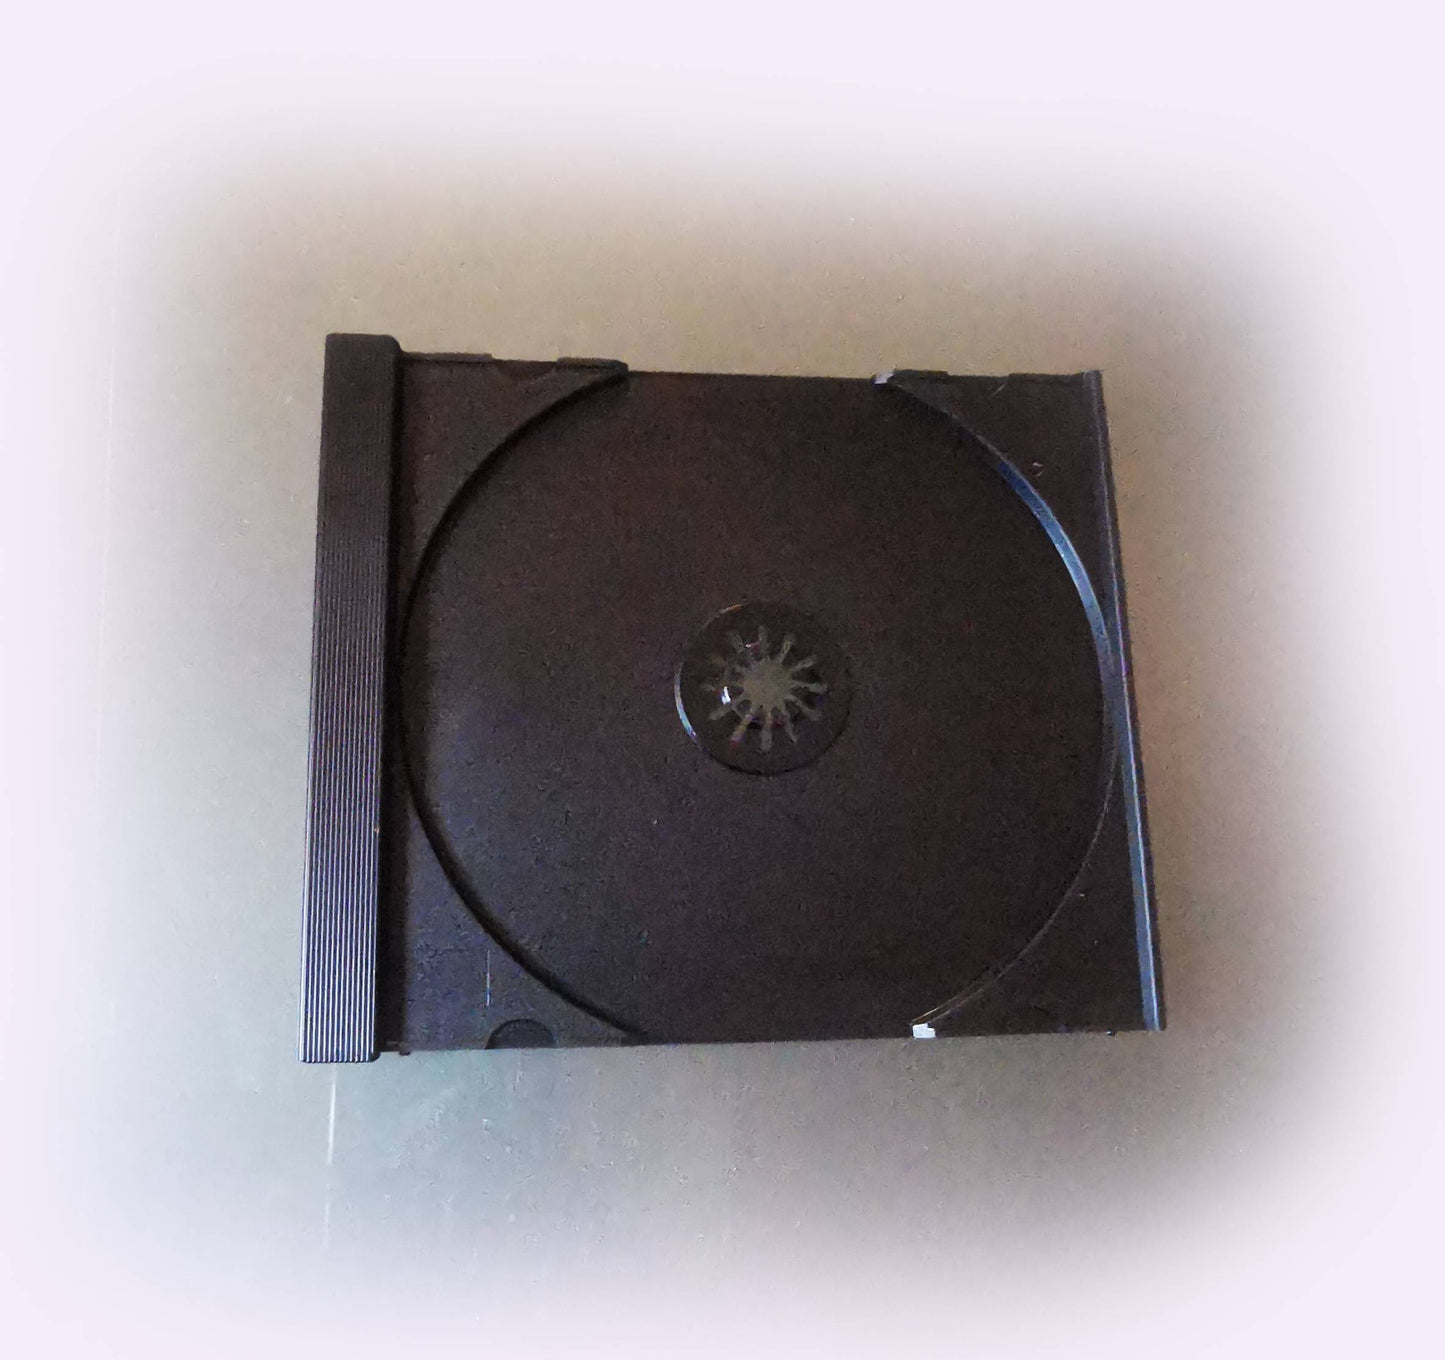 10 Cases for 1 DVD - Black -14mm